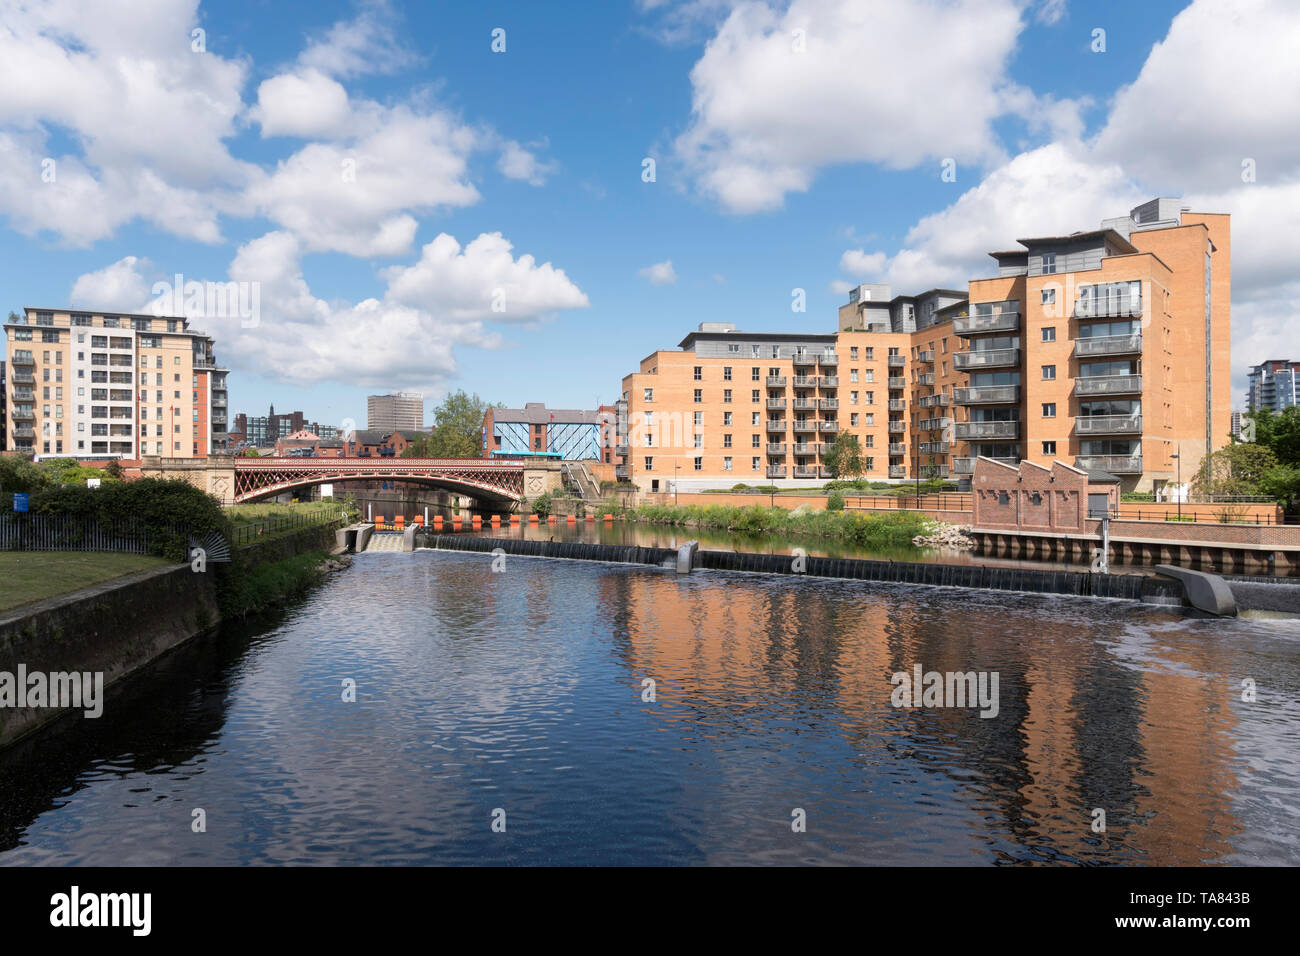 Crown Point ponte sul fiume Aire e riverside edifici di appartamenti a Leeds, nello Yorkshire, Inghilterra, Regno Unito Foto Stock